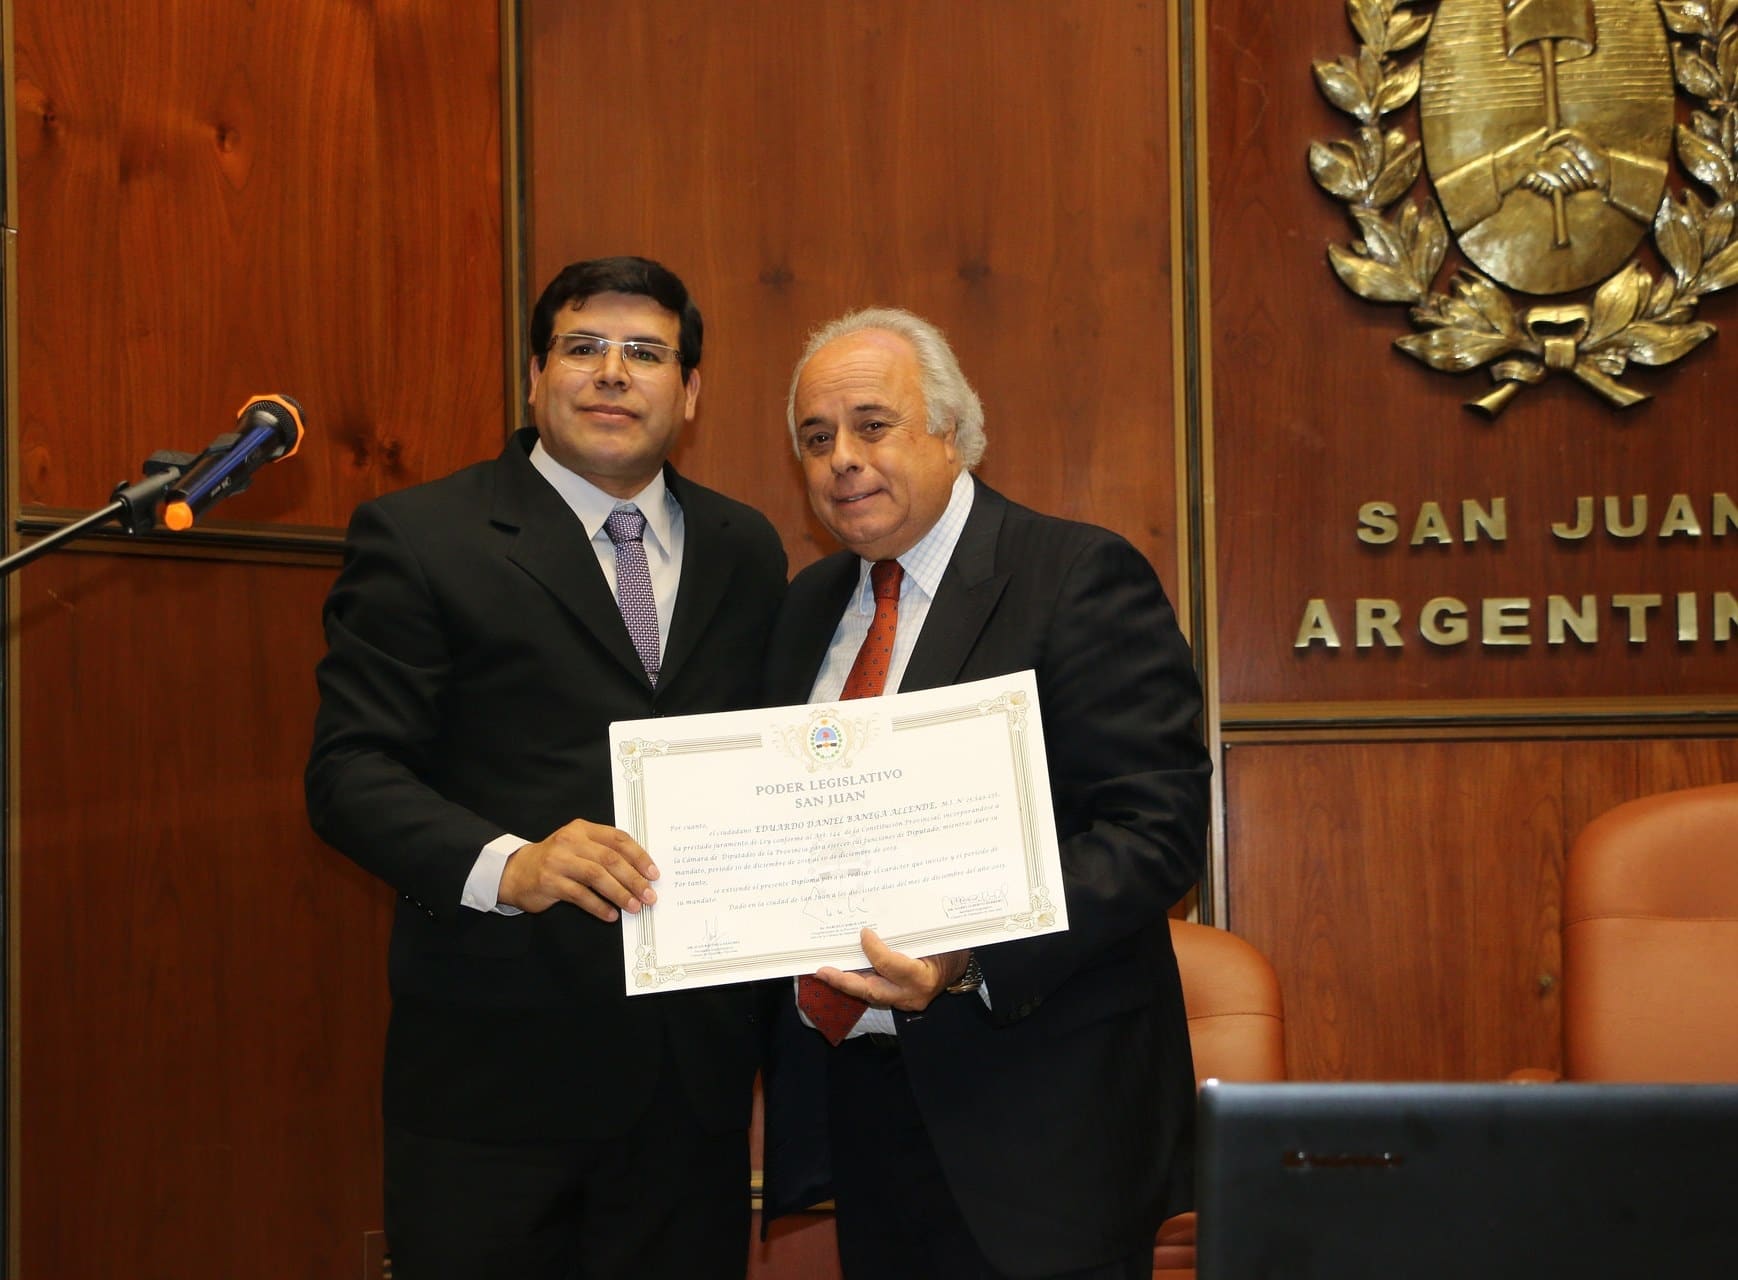 El vicegobernador Marcelo Lima entrega el diploma que lo acredita como tal al diputado Eduardo Banega